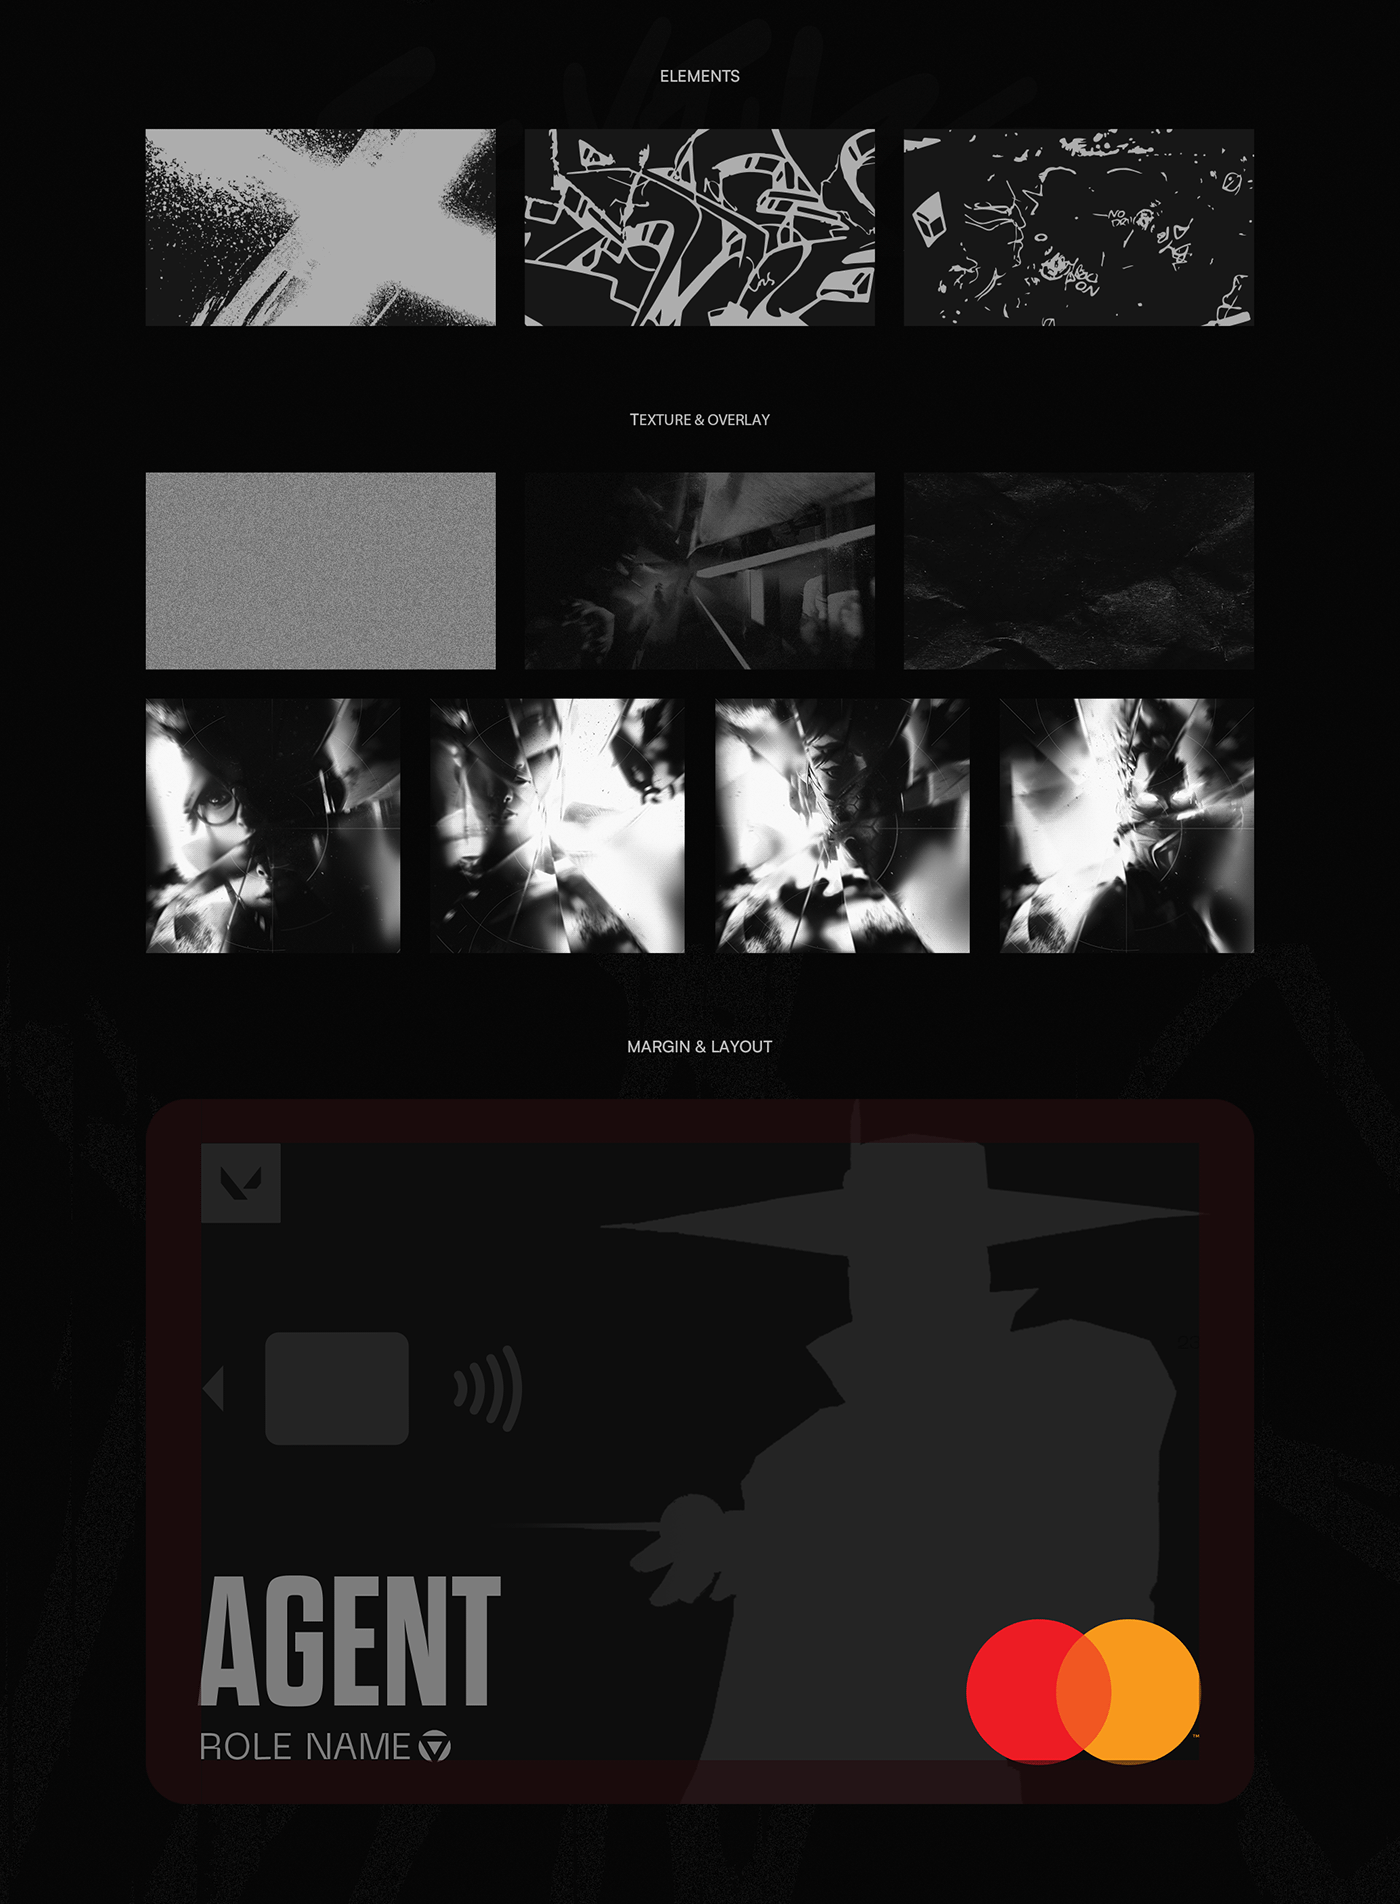 Valorant esports mastercard credit card Bank Gaming game design visual identity Social media post